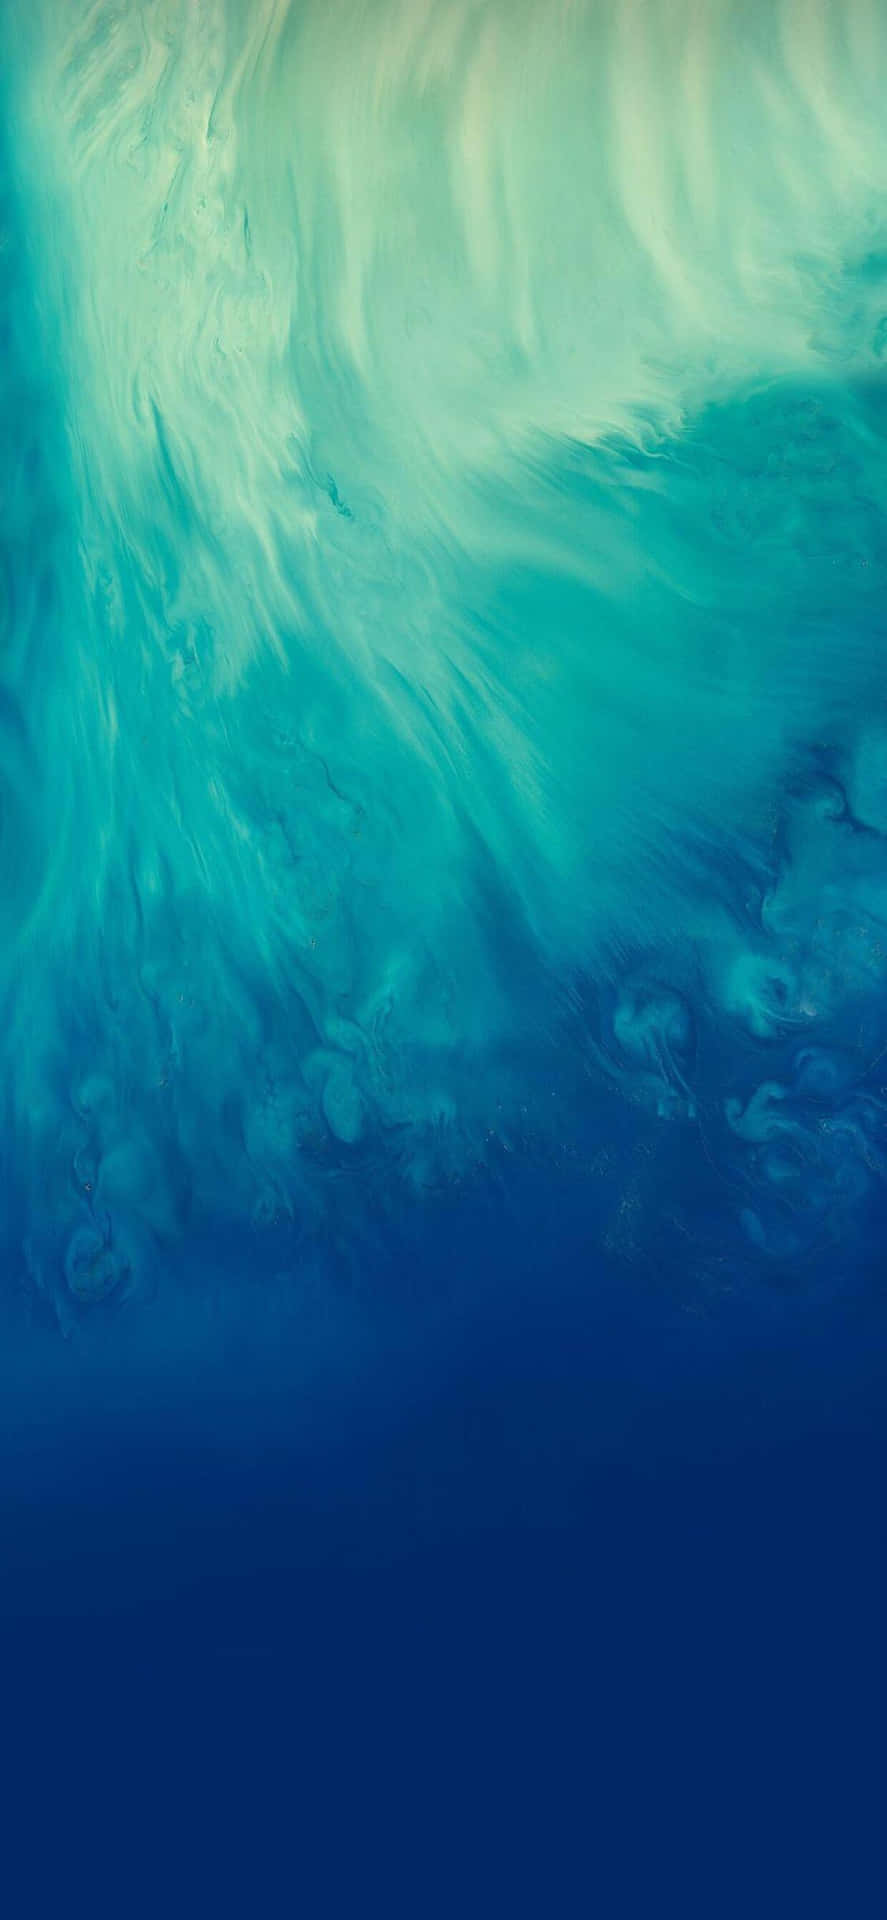 Abstract Aqua Waves Texture